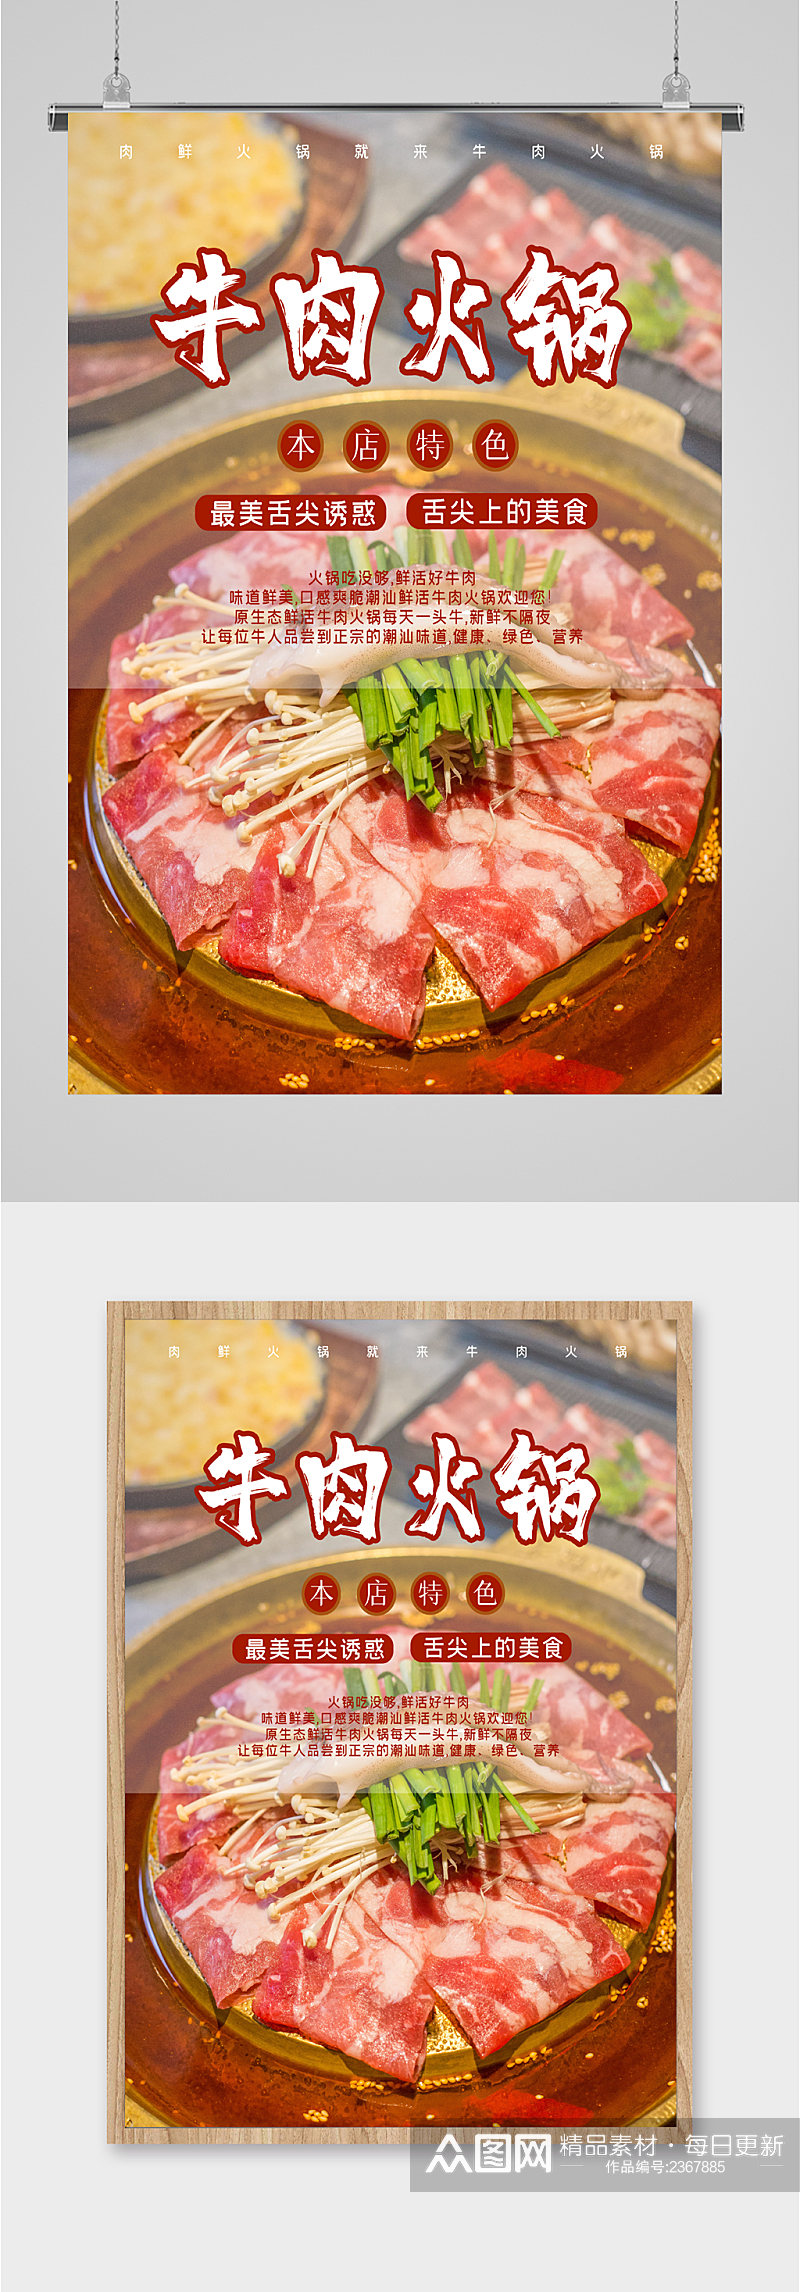 牛肉火锅特色美食海报素材